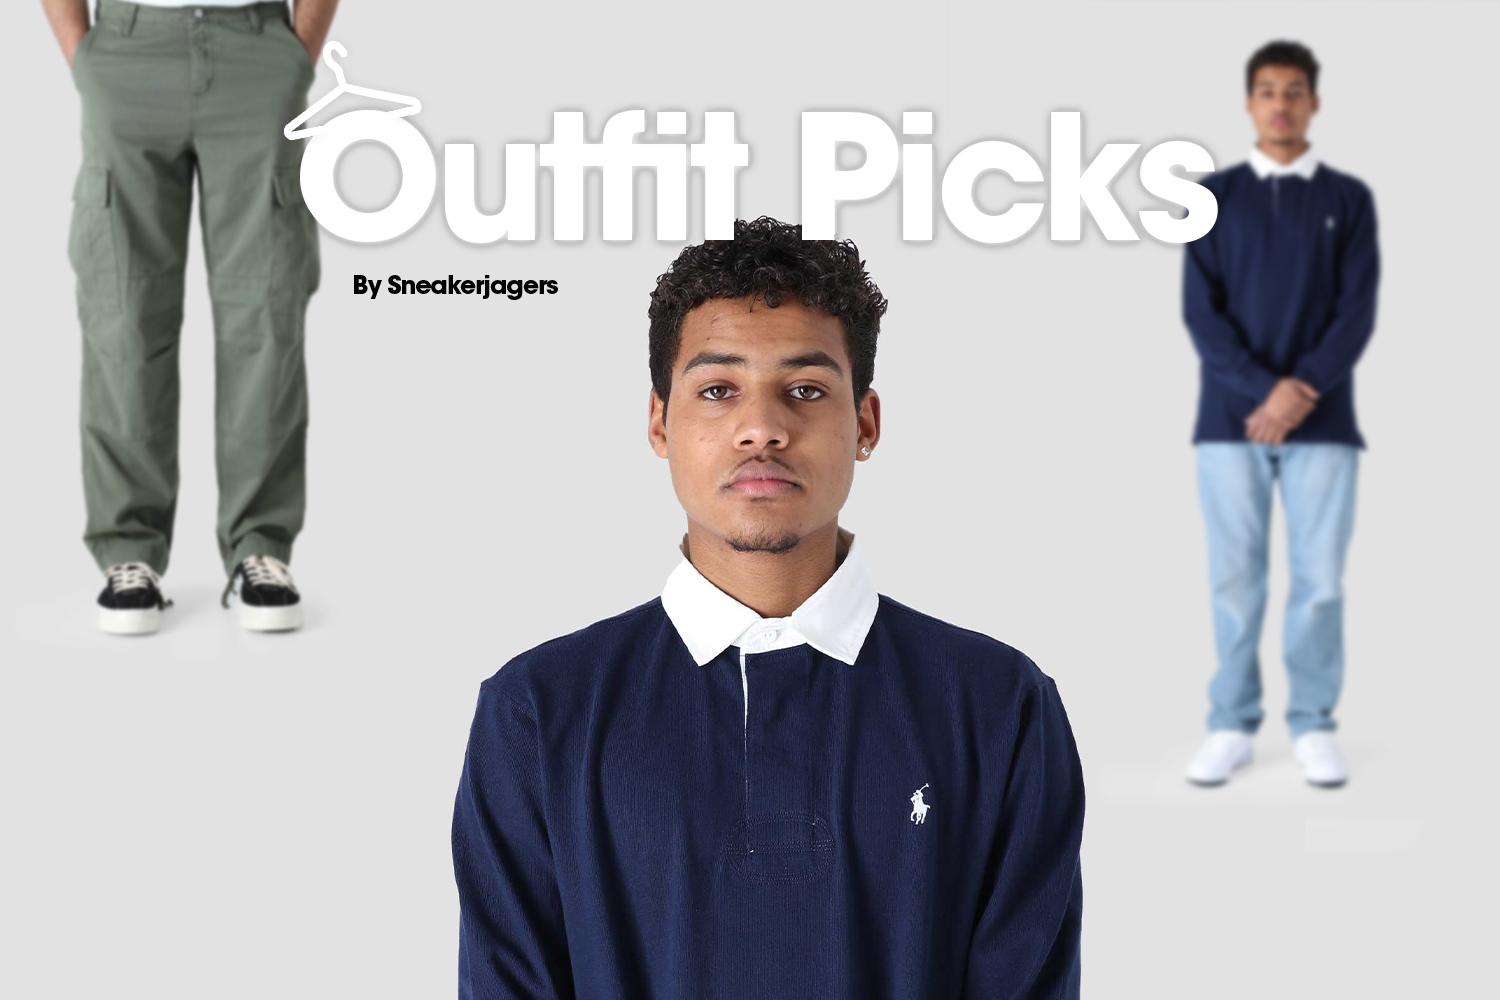 Outfit Picks by Sneakerjagers - week 3